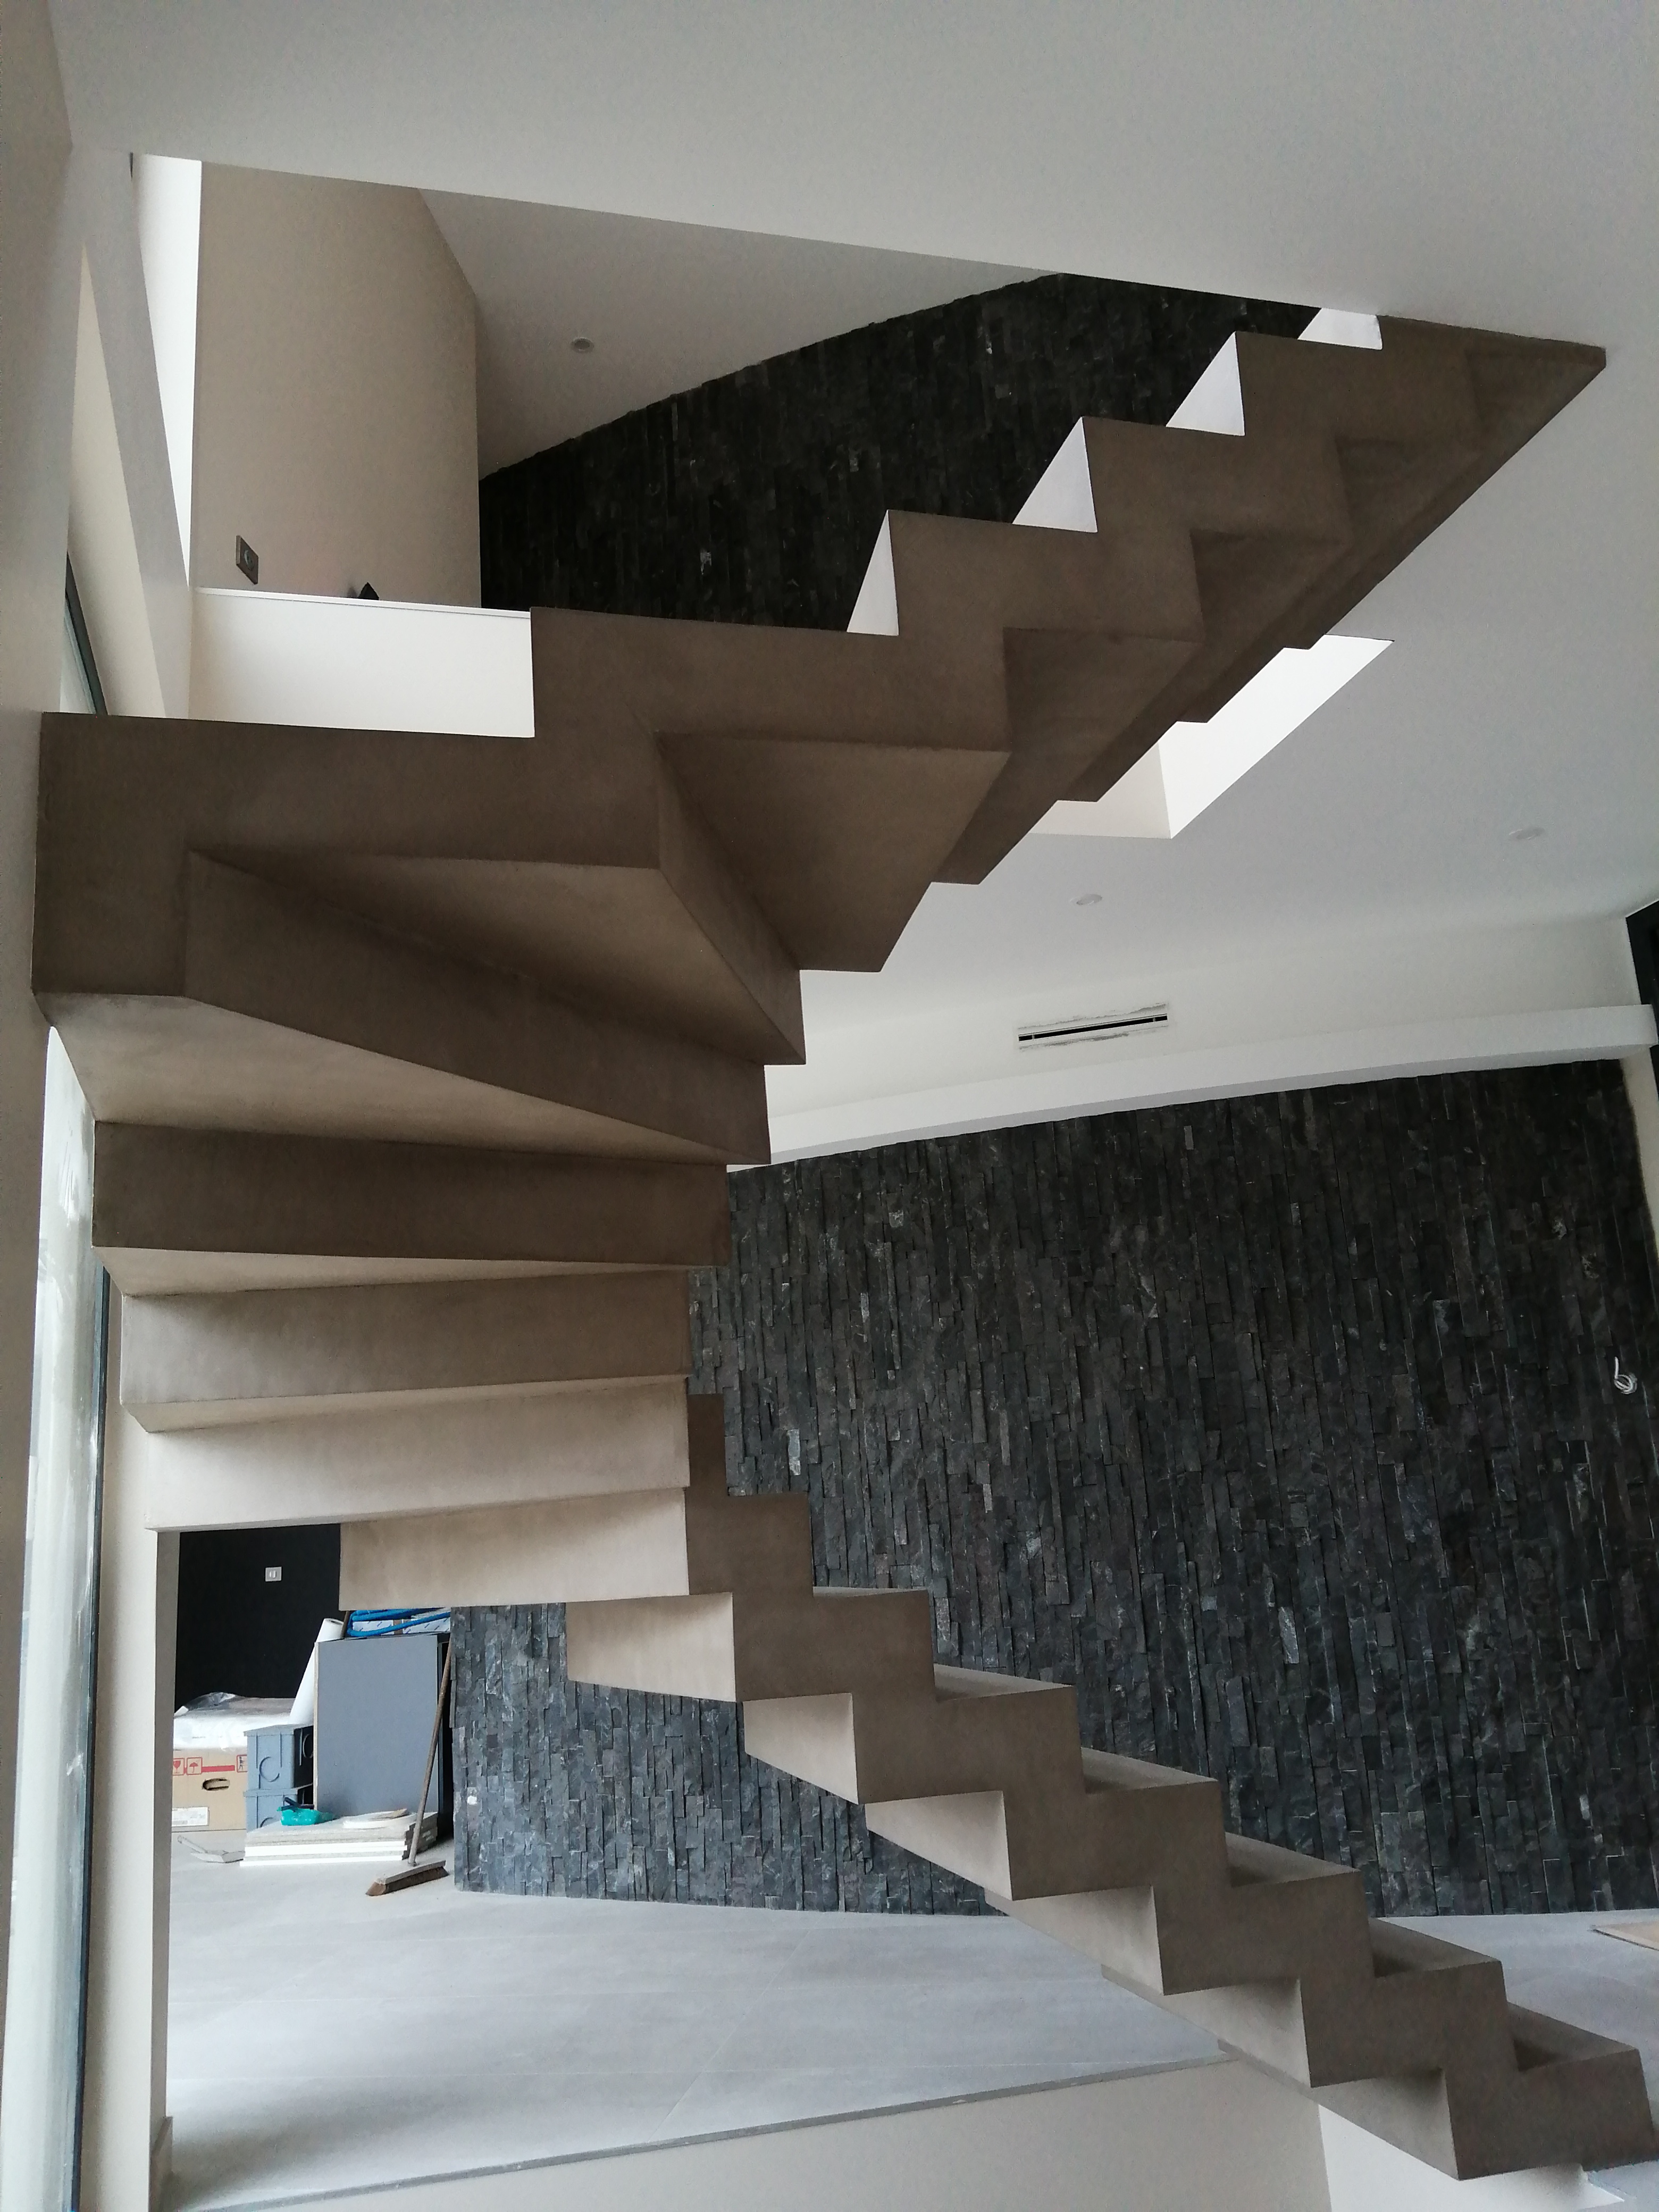 Maison de rêves avec béton ciré sur les escaliers béton